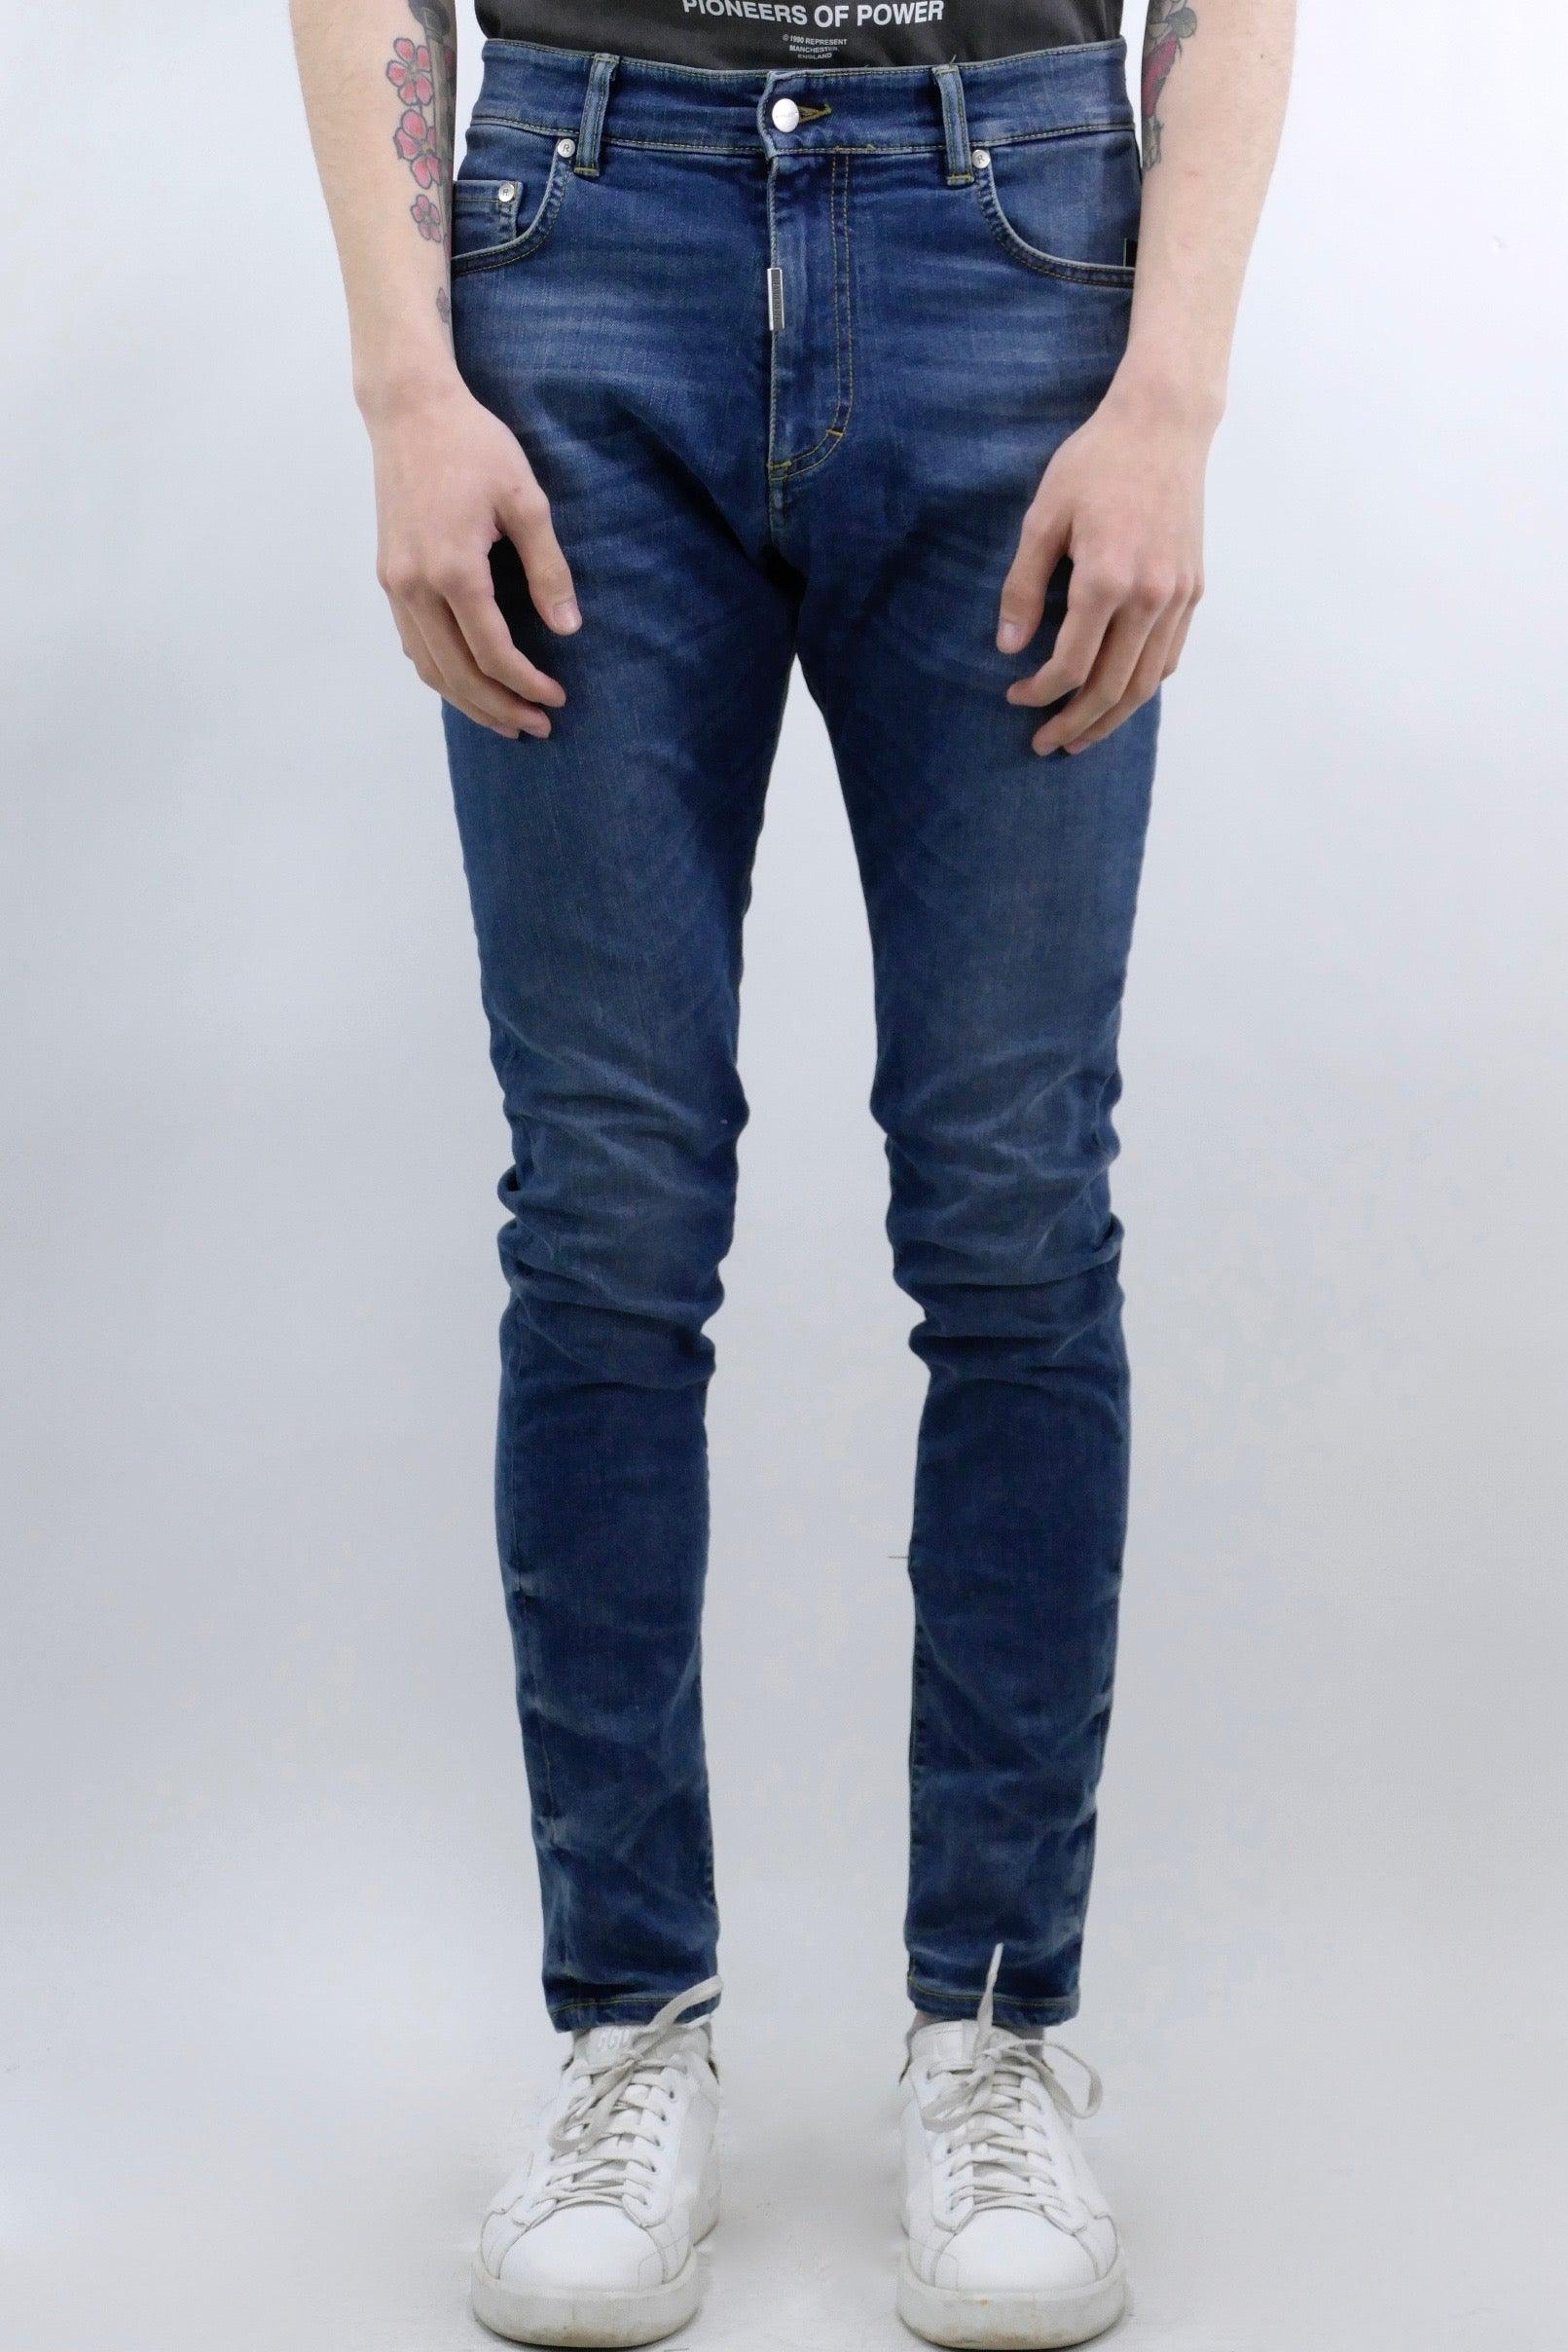 Represent Essential Jeans - Vintage Blue - Due West